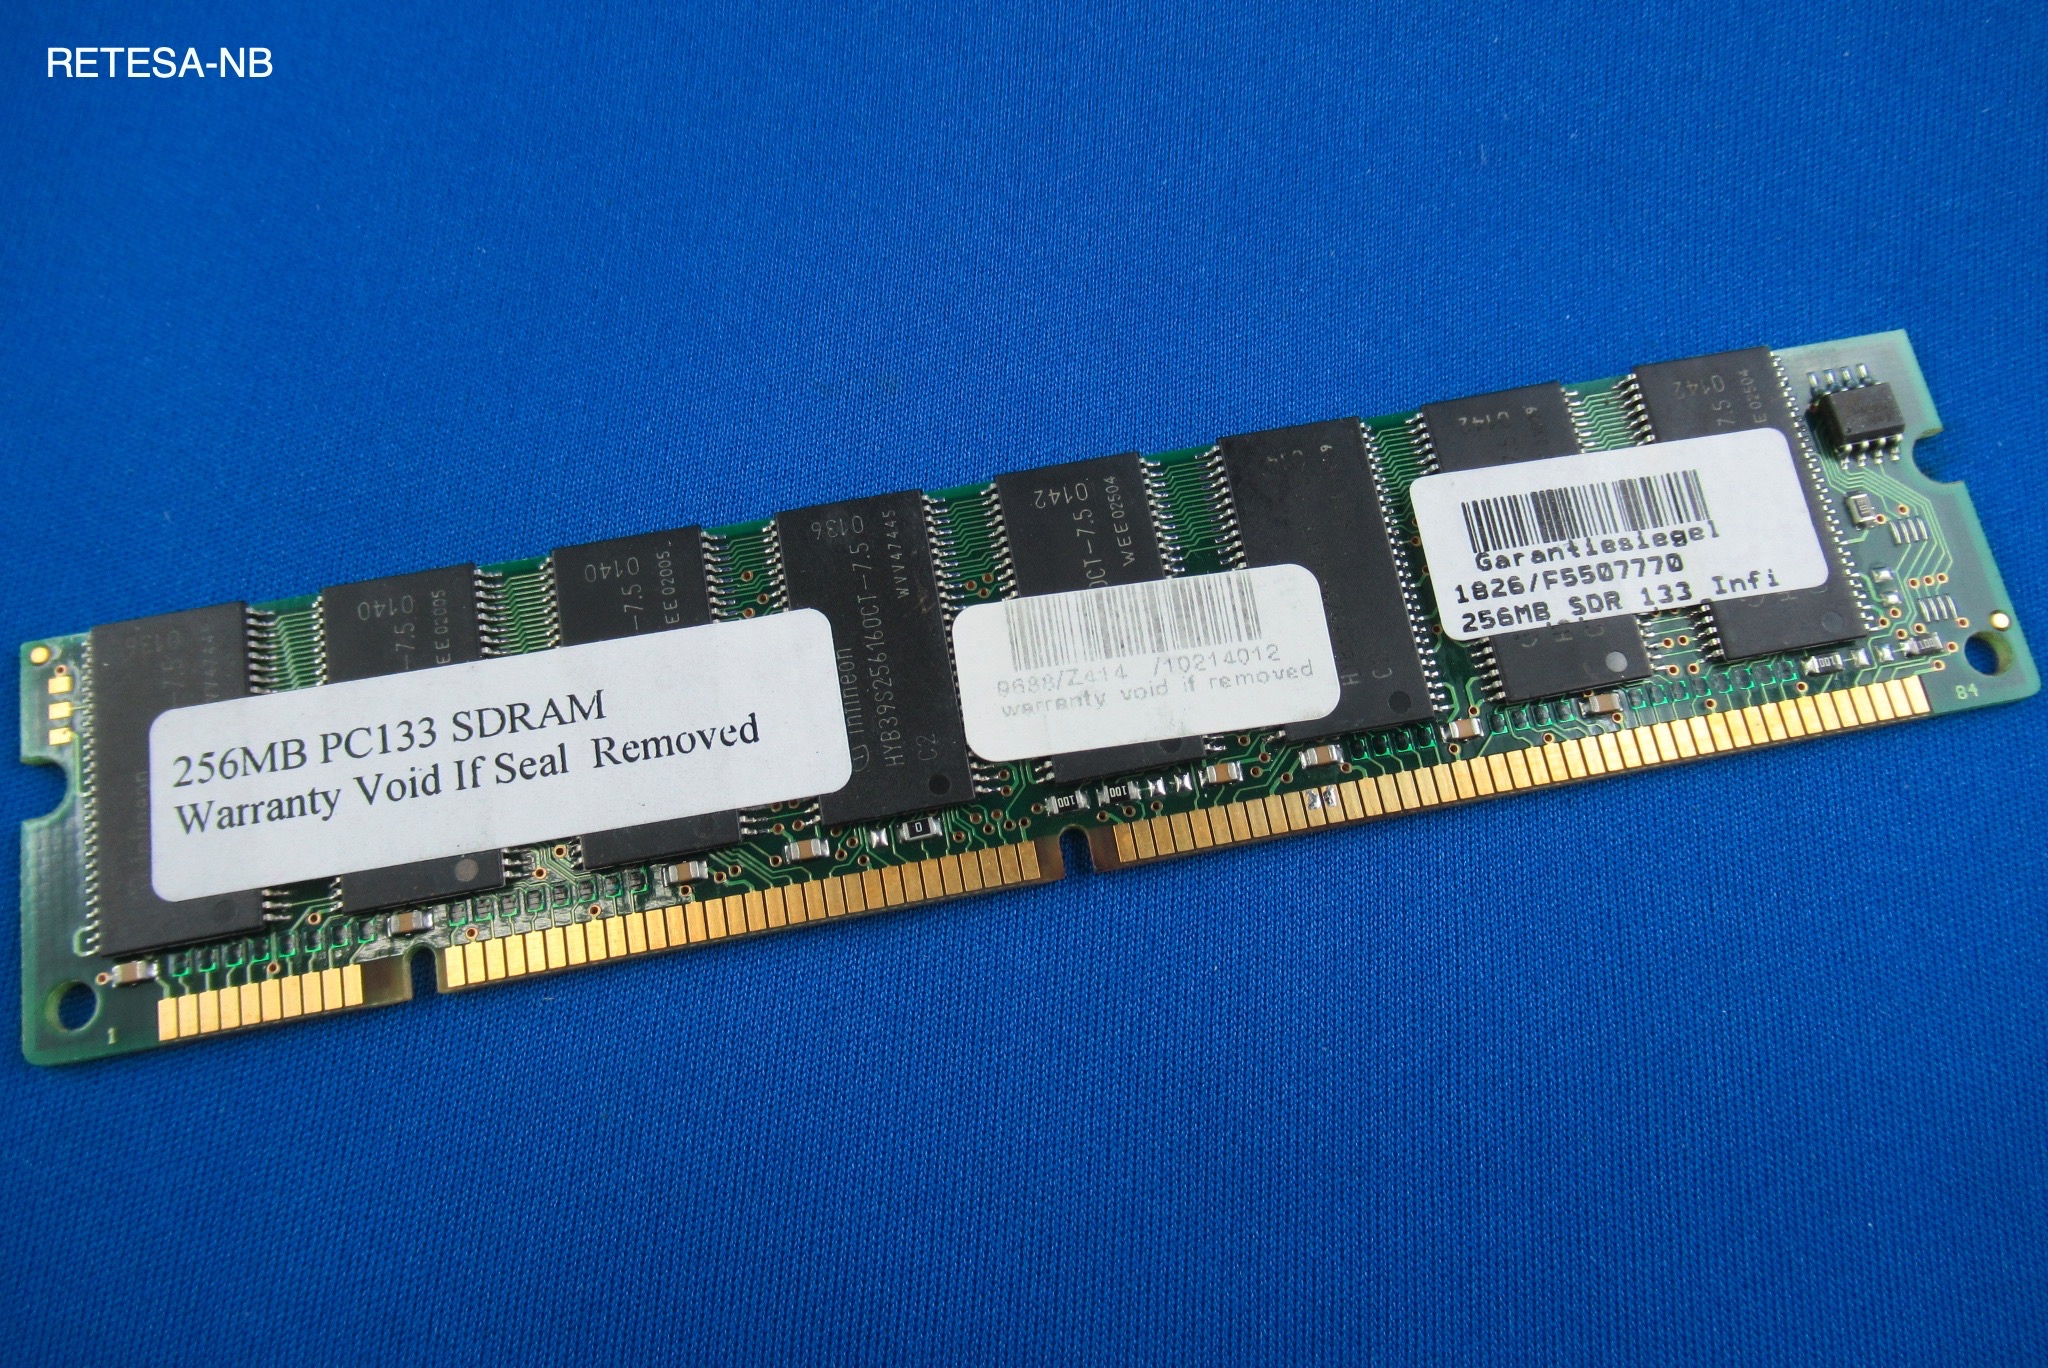 GEBRAUCHT SDRAM 256MB PC133 CL3 INFINEON